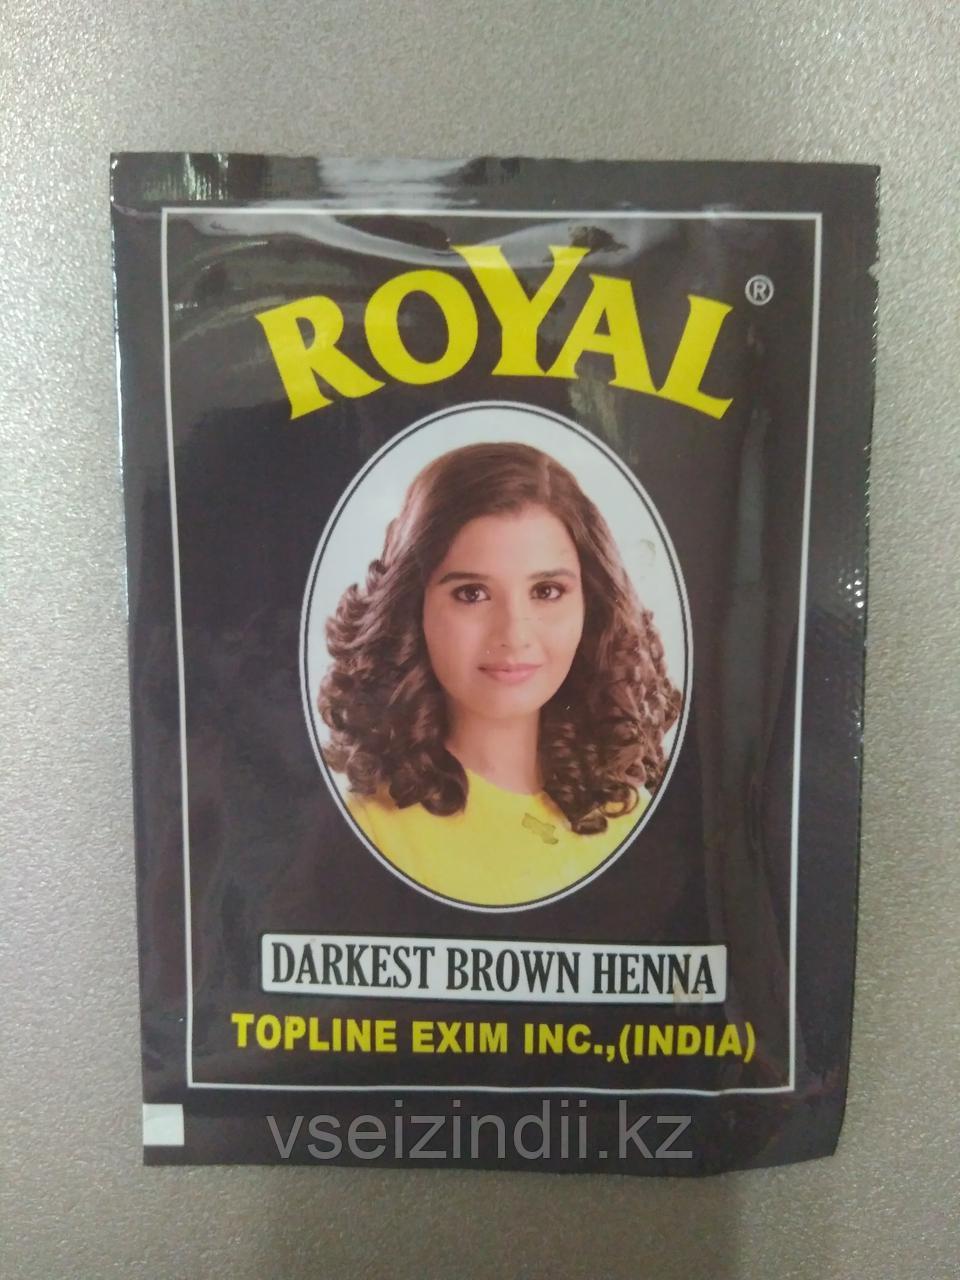 Индийская хна Royal Henna, цвет Темно коричневый, Darkest Brown